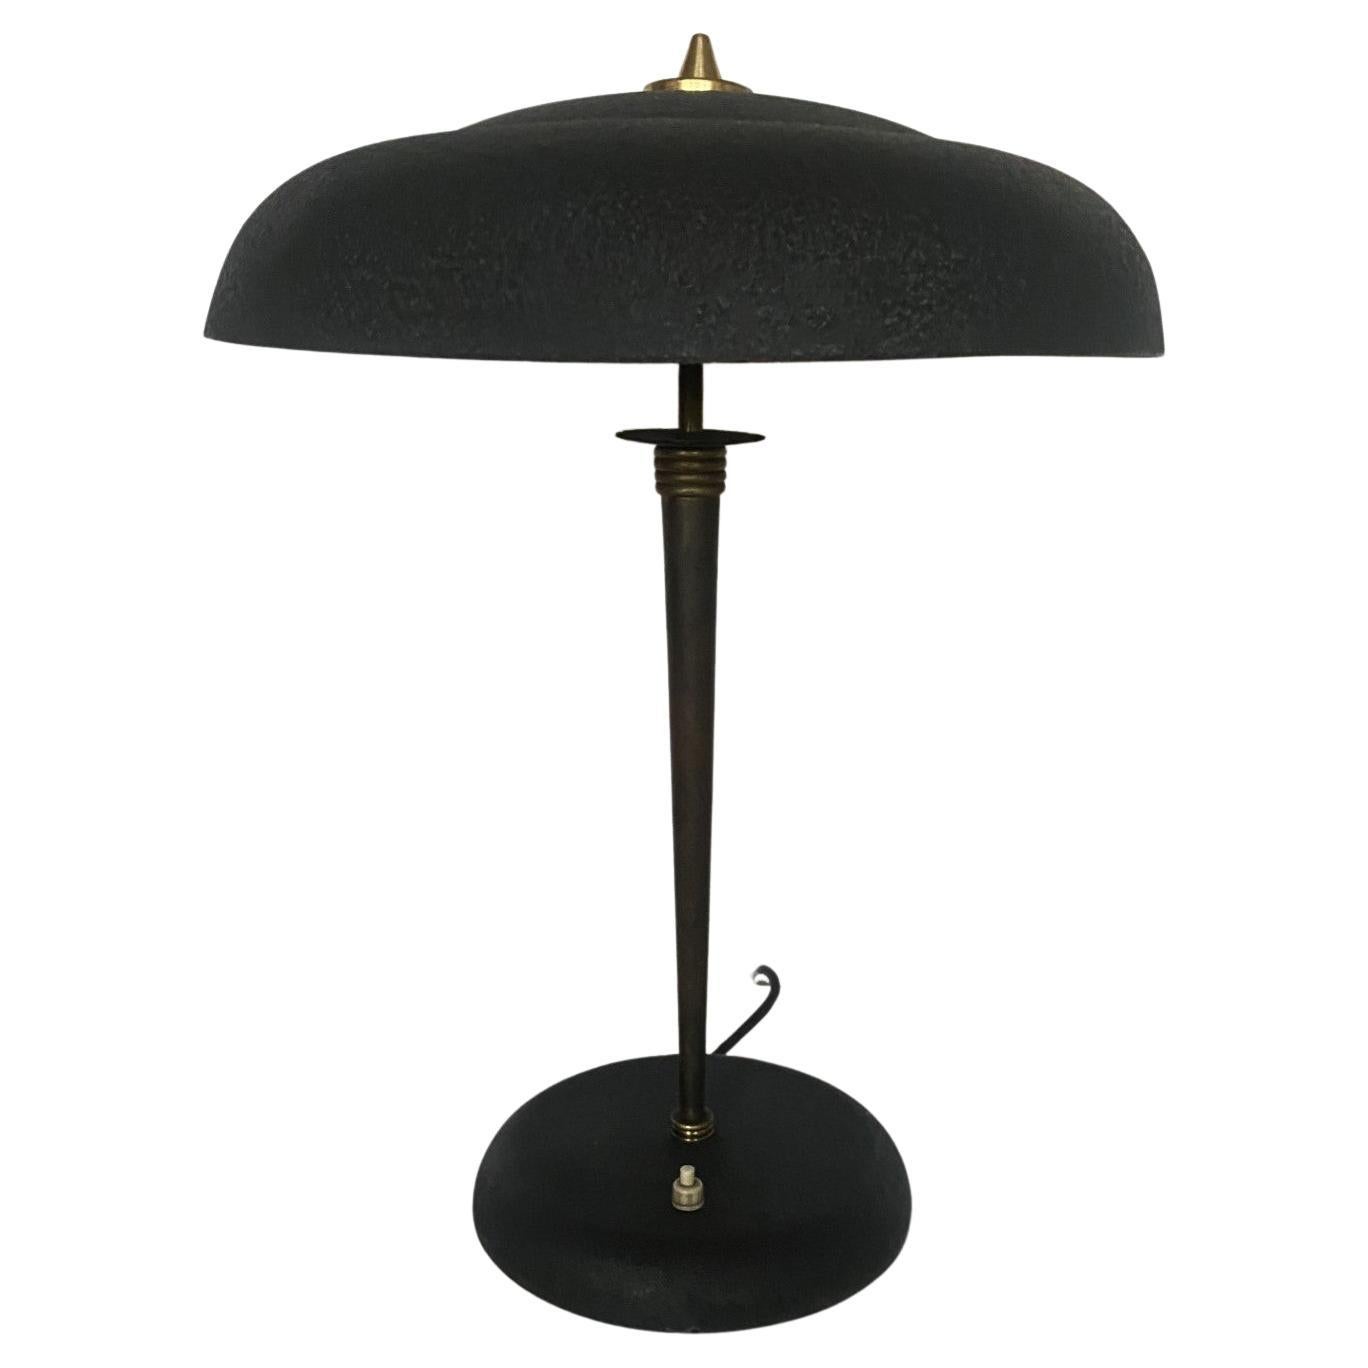 Midcentury Stilnovo Desk or Table Lamp Brass Black Enameled Metal, Iataly, 1950s For Sale